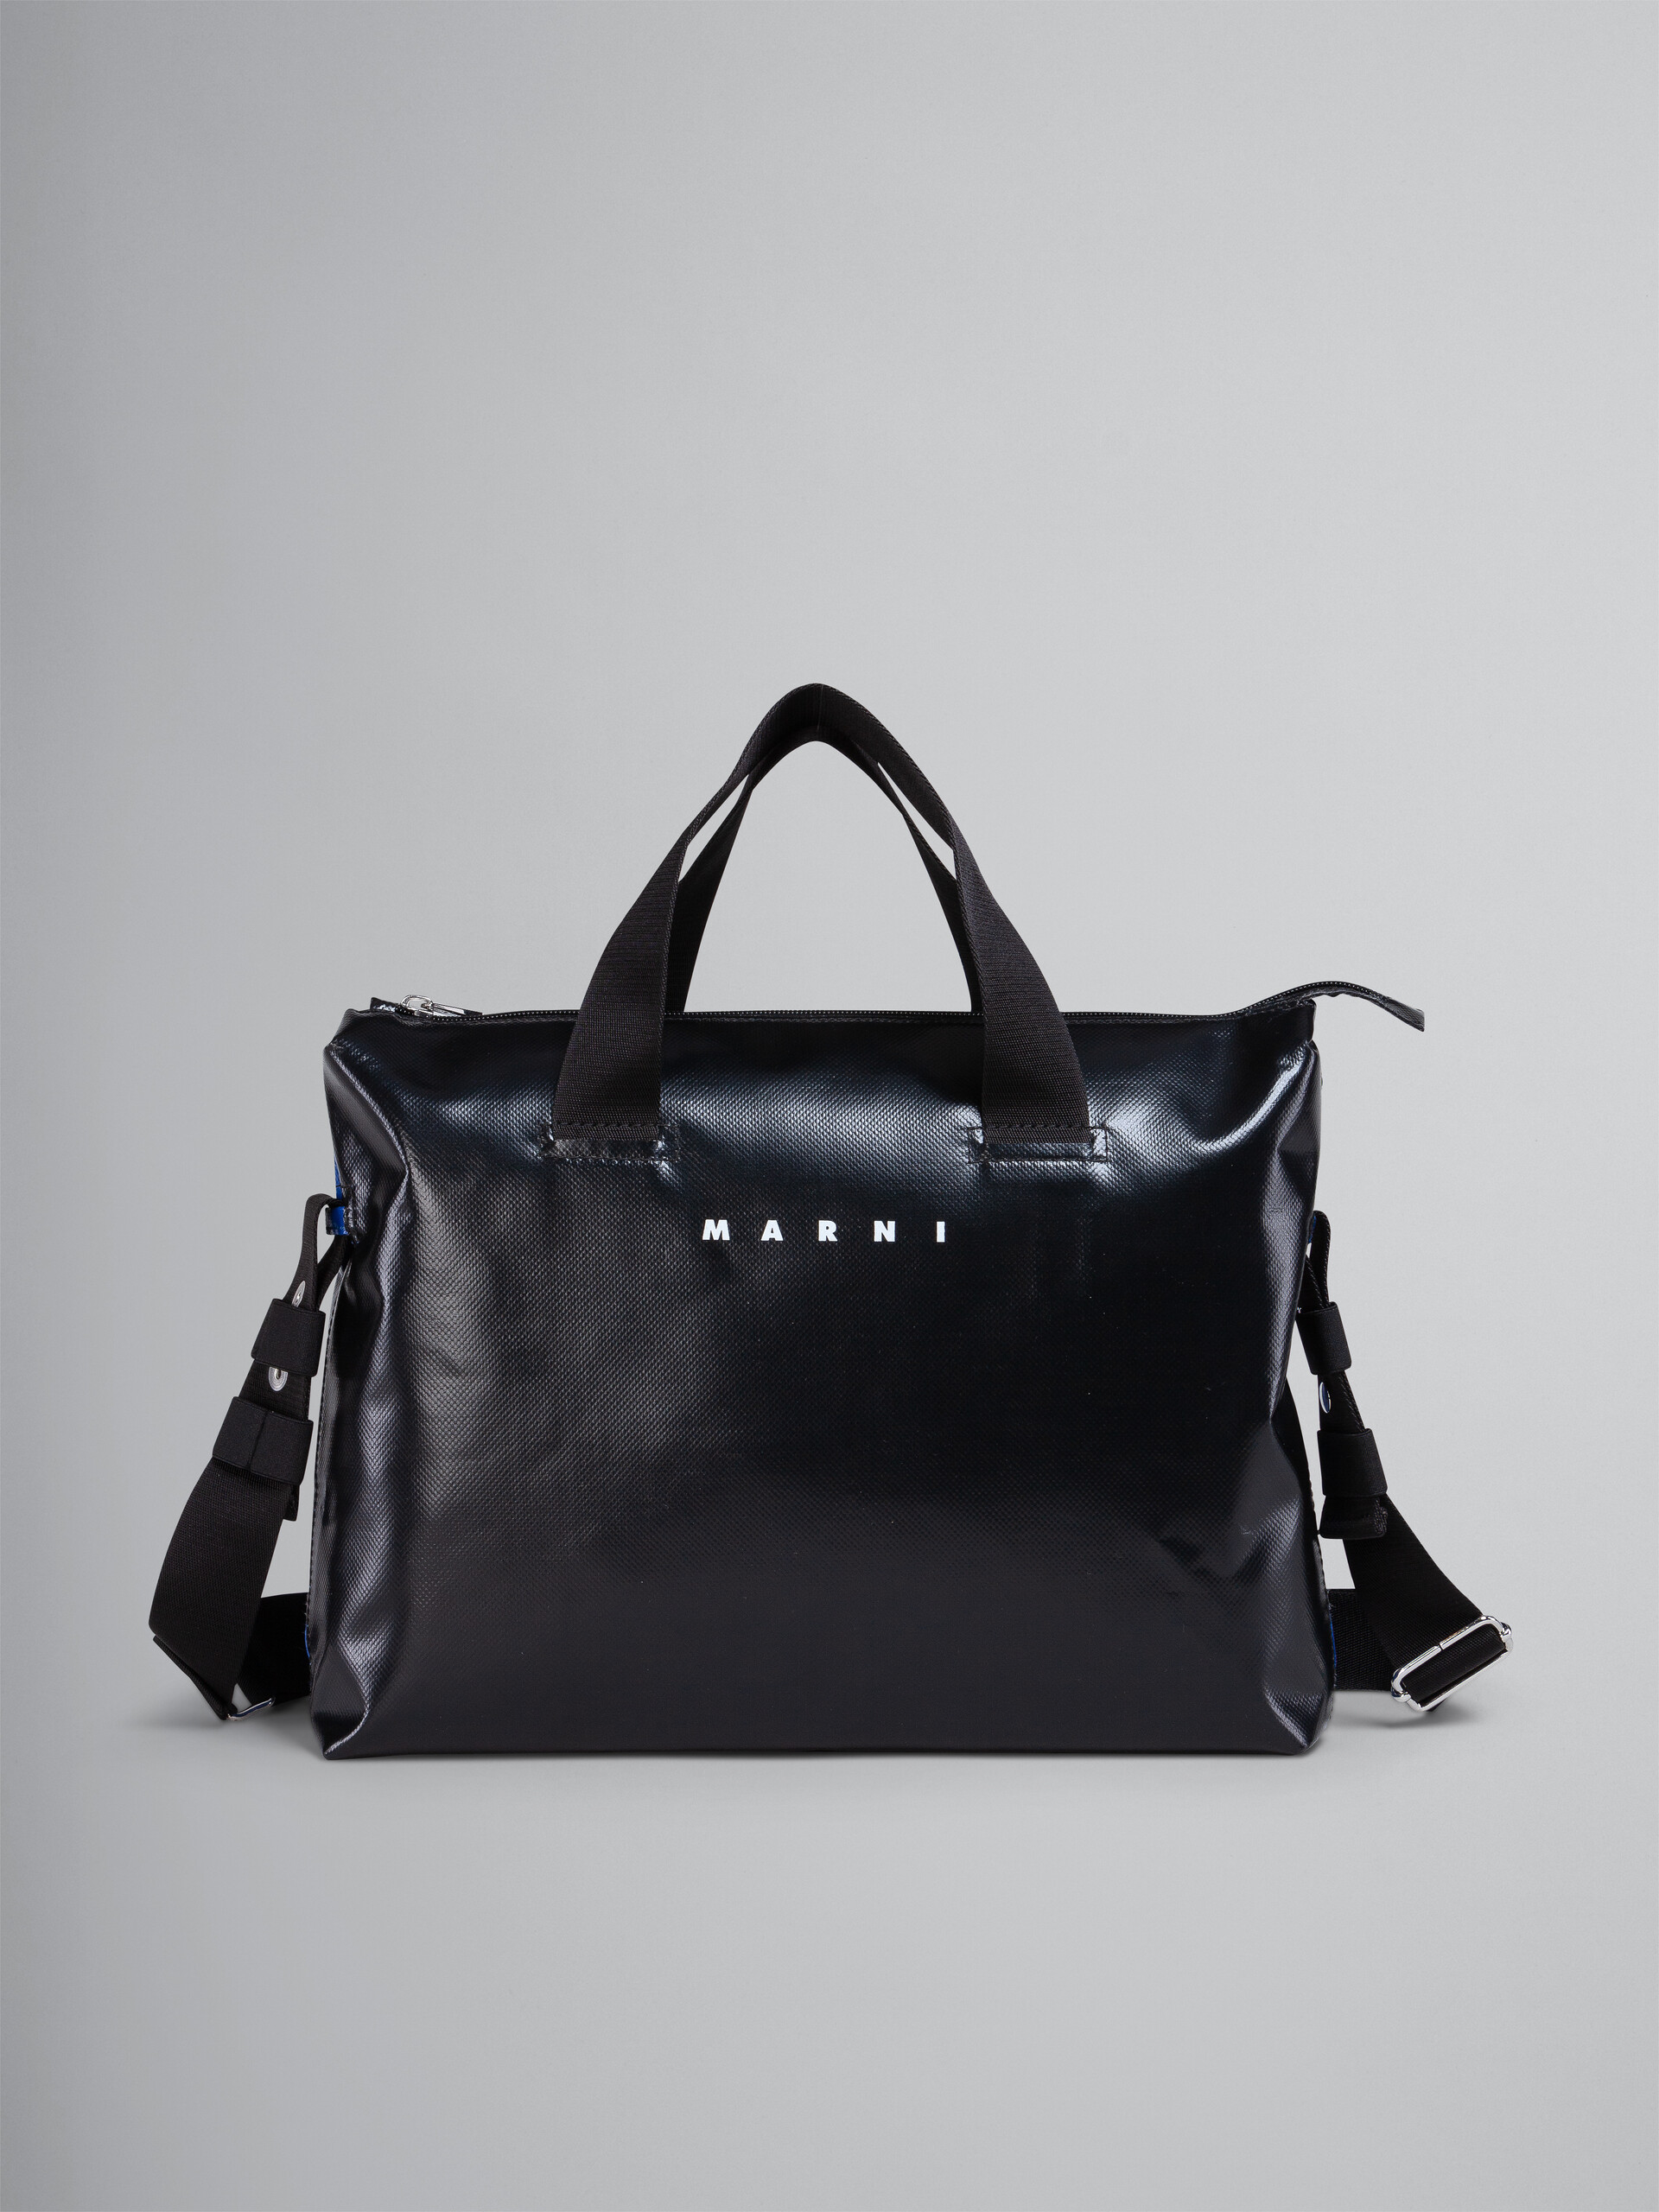 Zweifarbige, schwarze und blaue TRIBECA PVC-Tasche - Handtaschen - Image 1